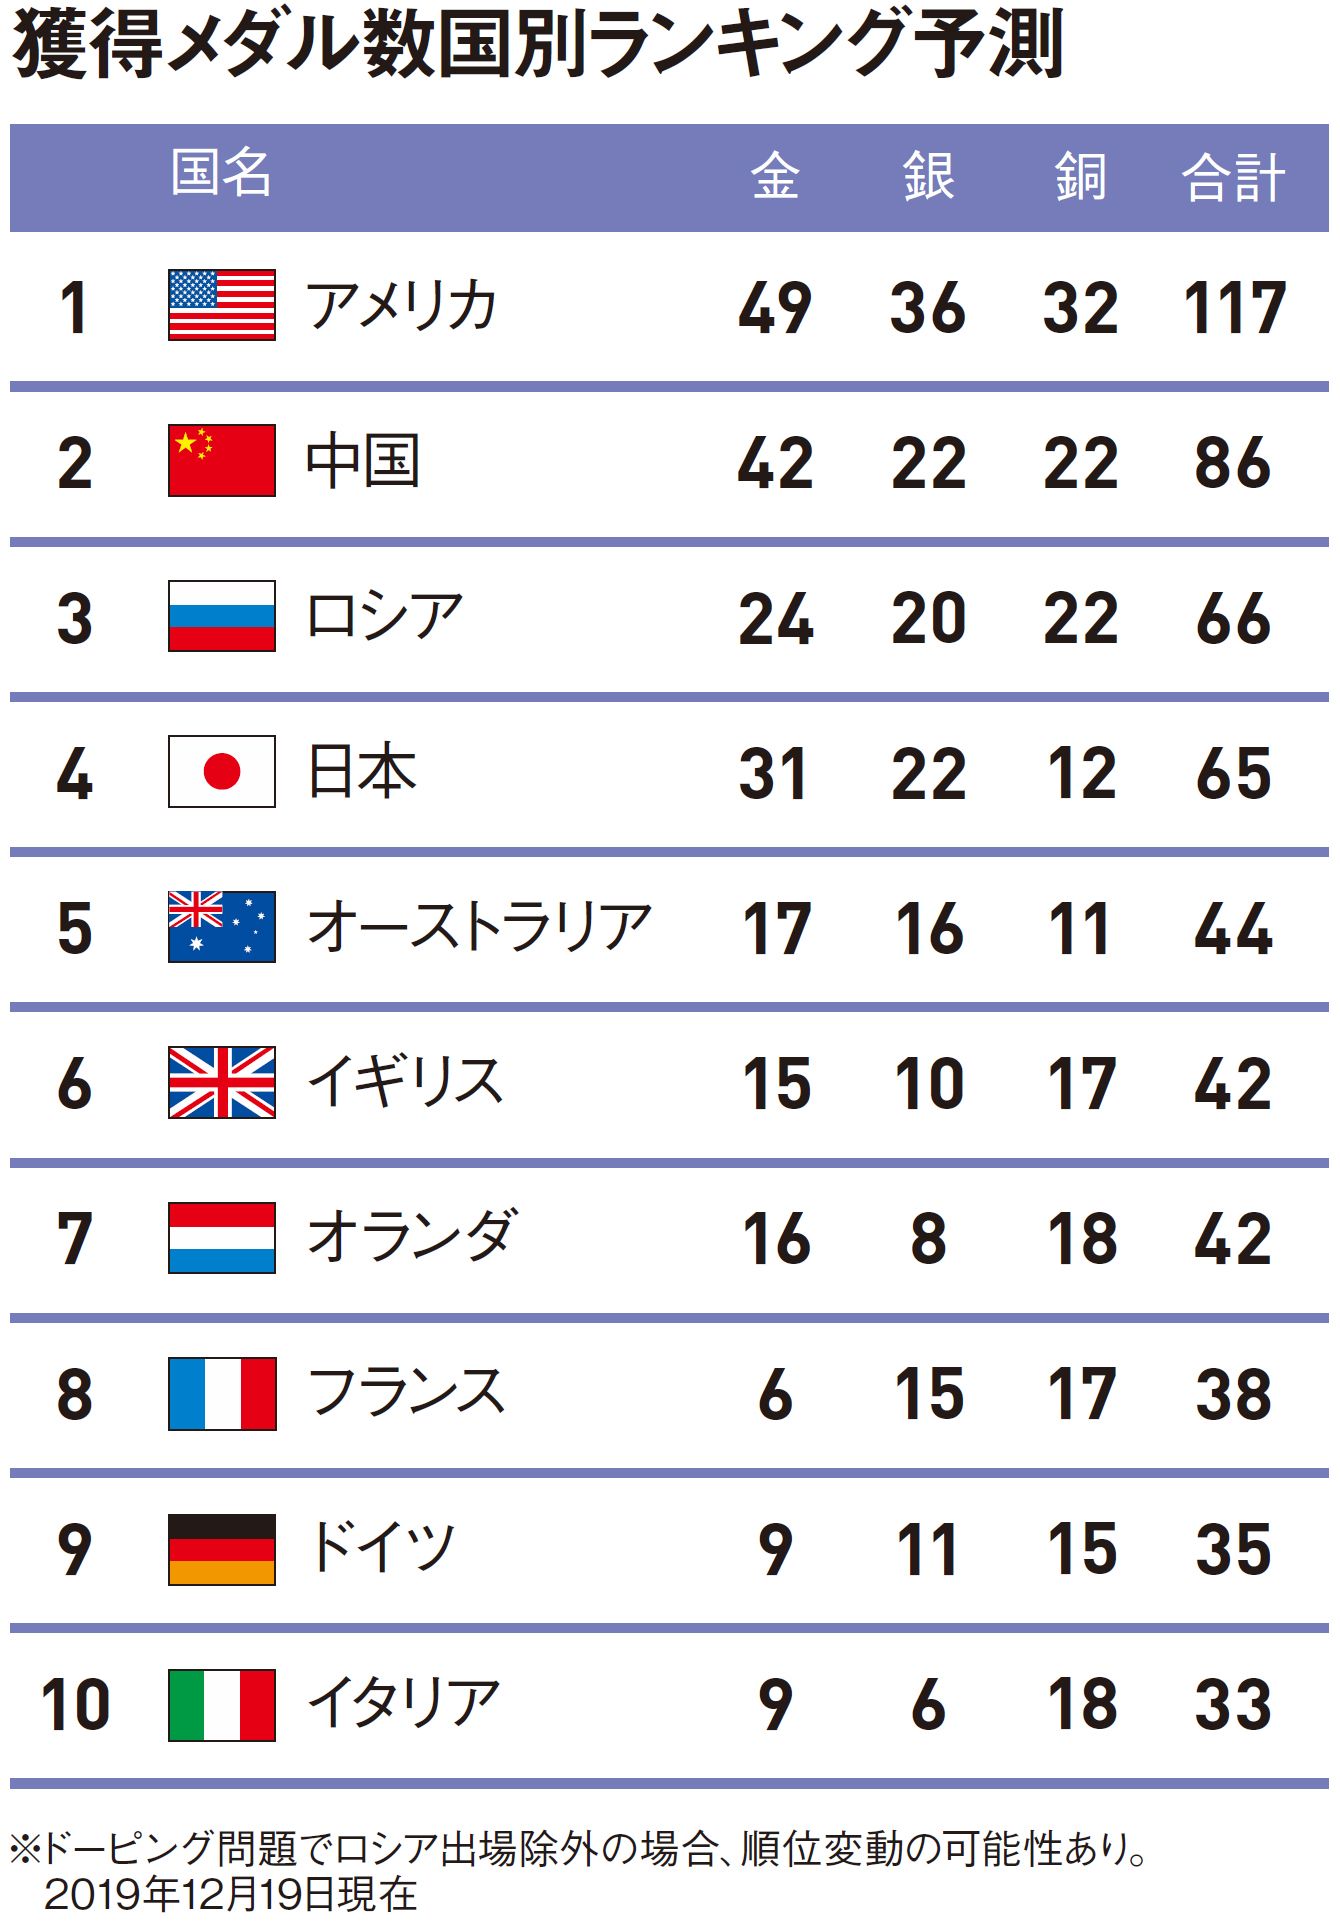 もし東京五輪が実現したら｢いつ､誰が､どこで､何枚｣メダルを獲るのか大予測!